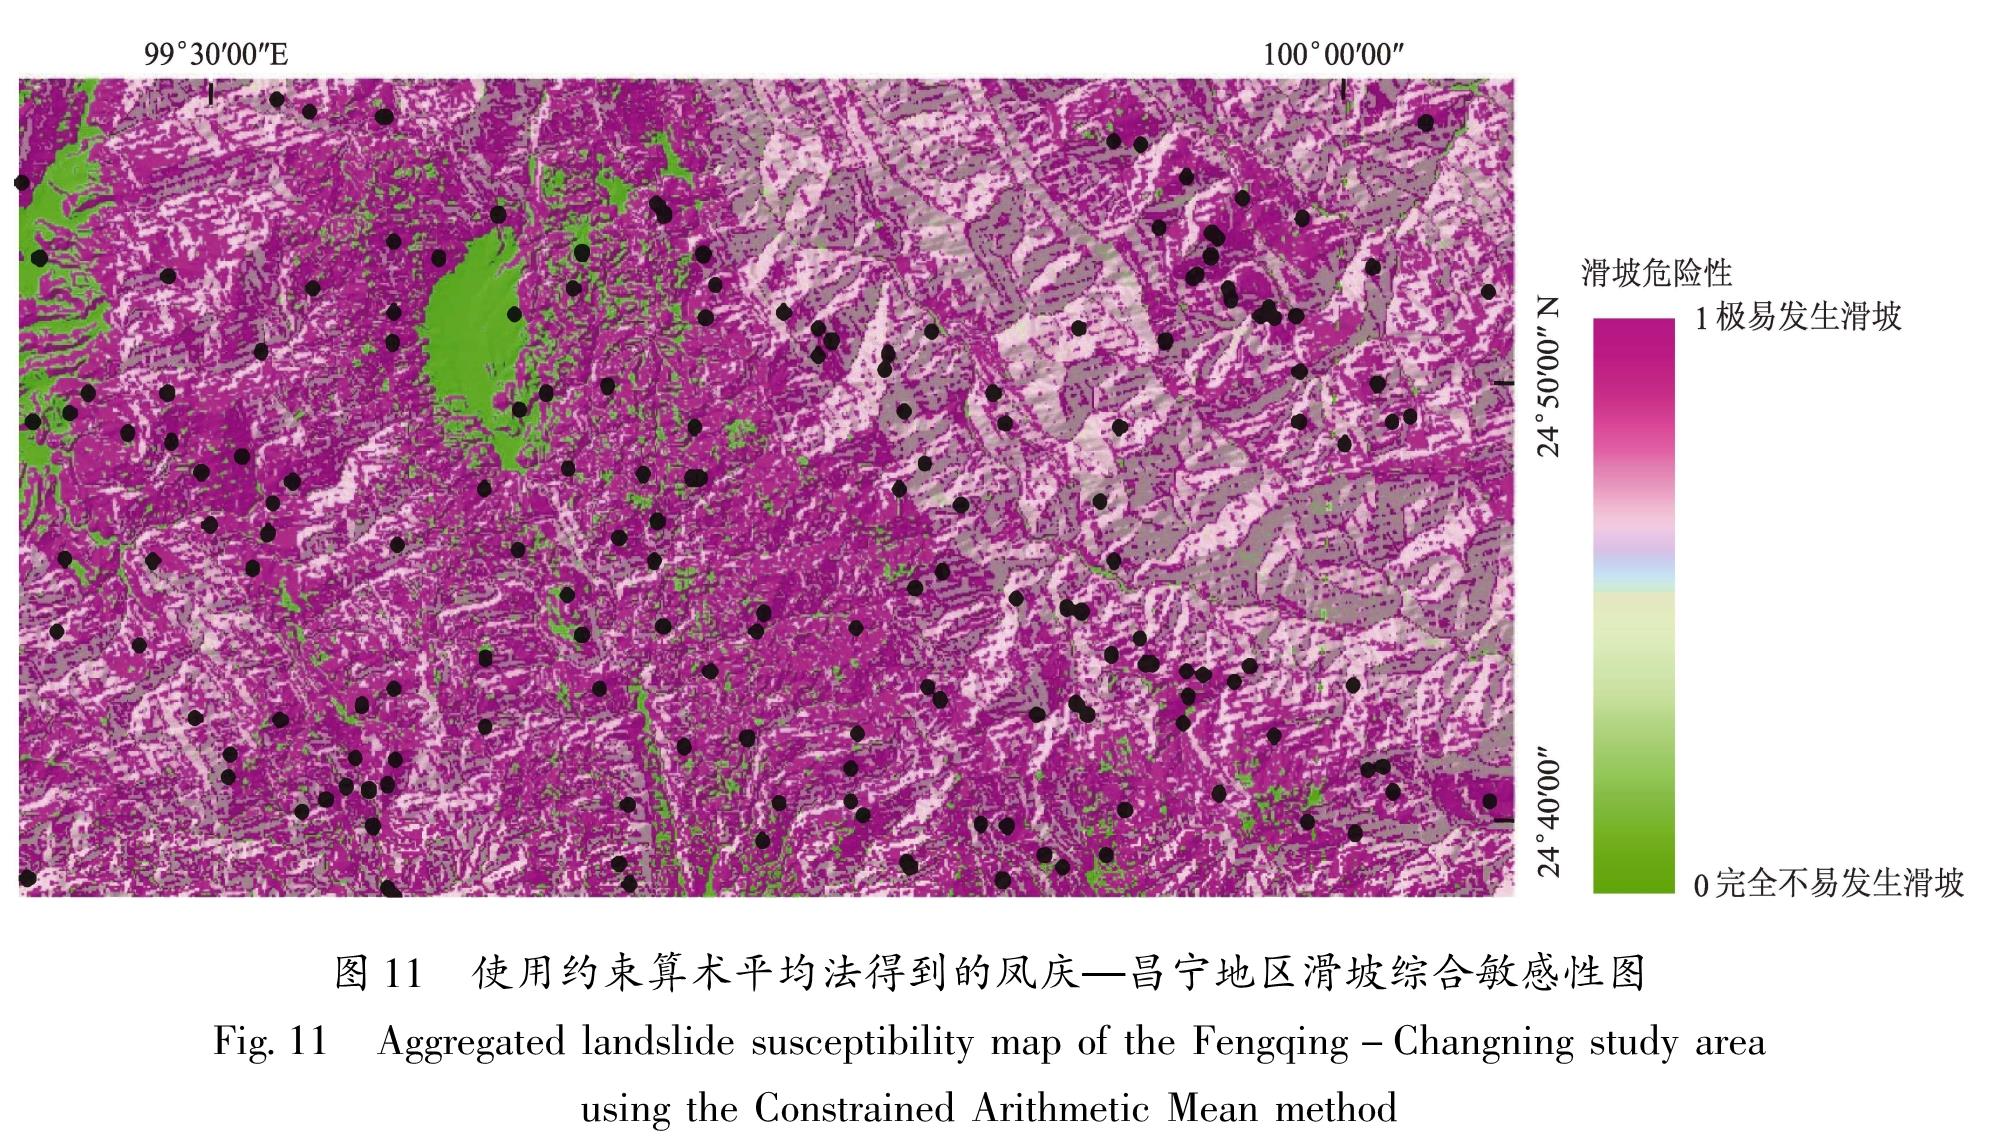 图11 使用约束算术平均法得到的凤庆—昌宁地区滑坡综合敏感性图<br/>Fig.11 Aggregated landslide susceptibility map of the Fengqing-Changning study area using the Constrained Arithmetic Mean method